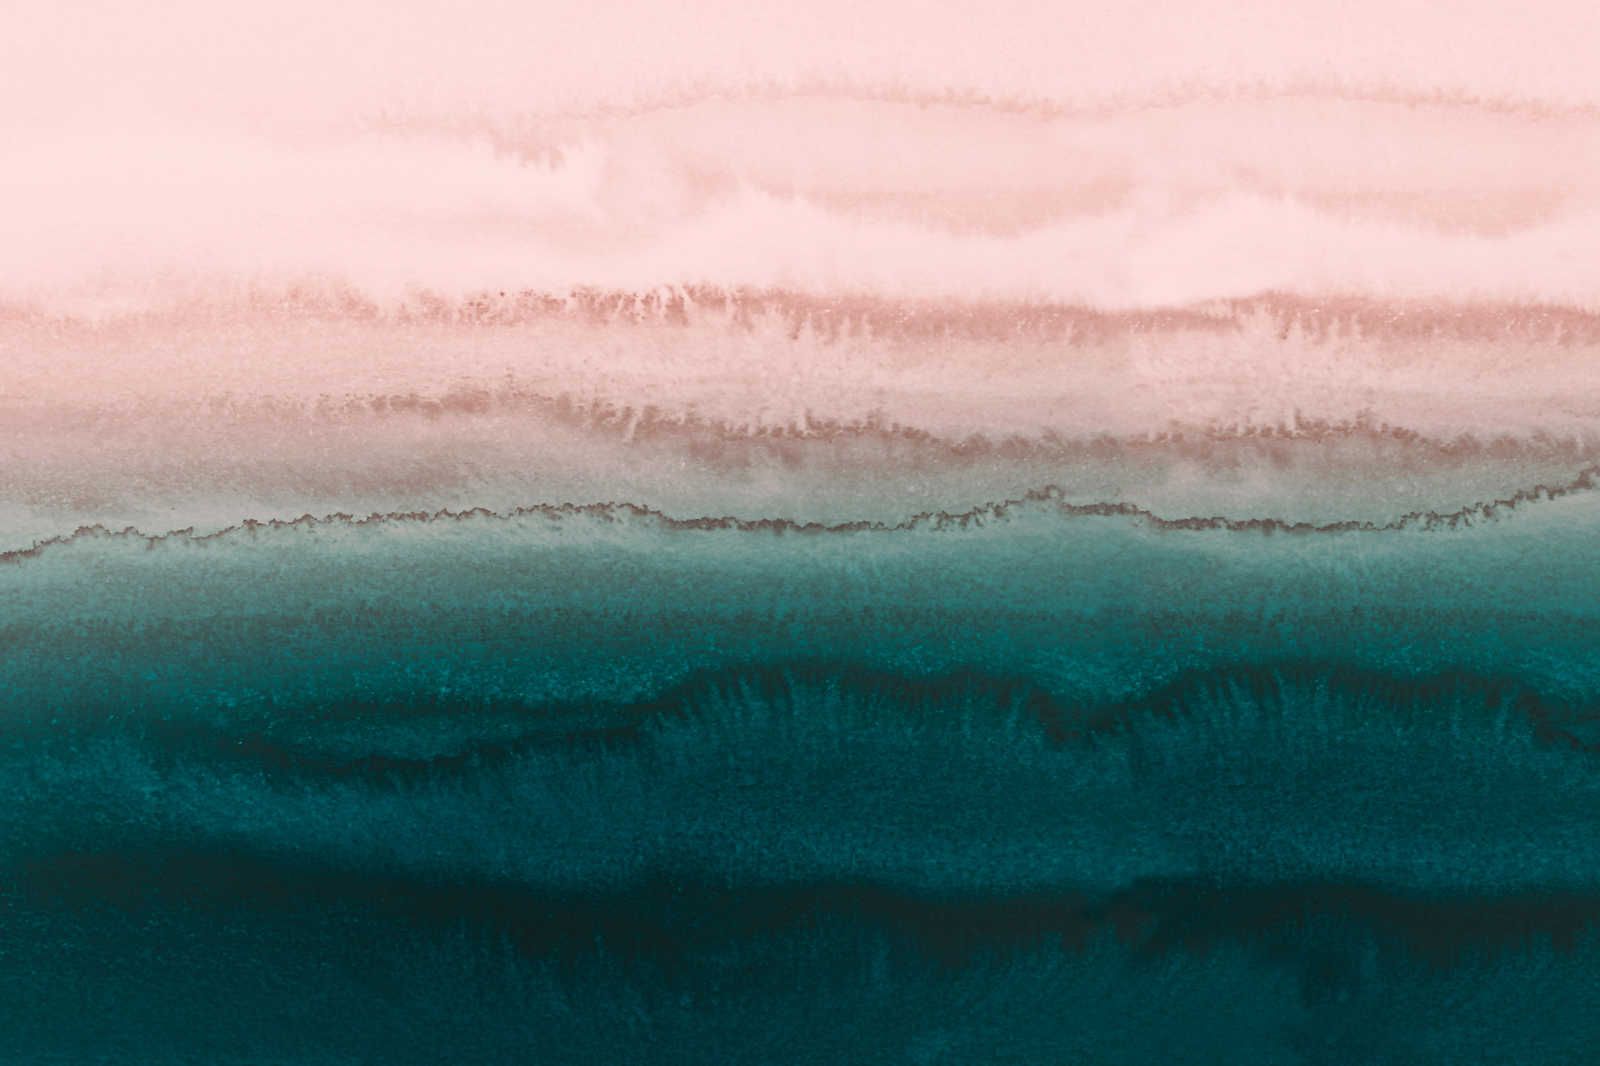             Marée toile avec eau abstraite aquarelle - 0,90 m x 0,60 m
        